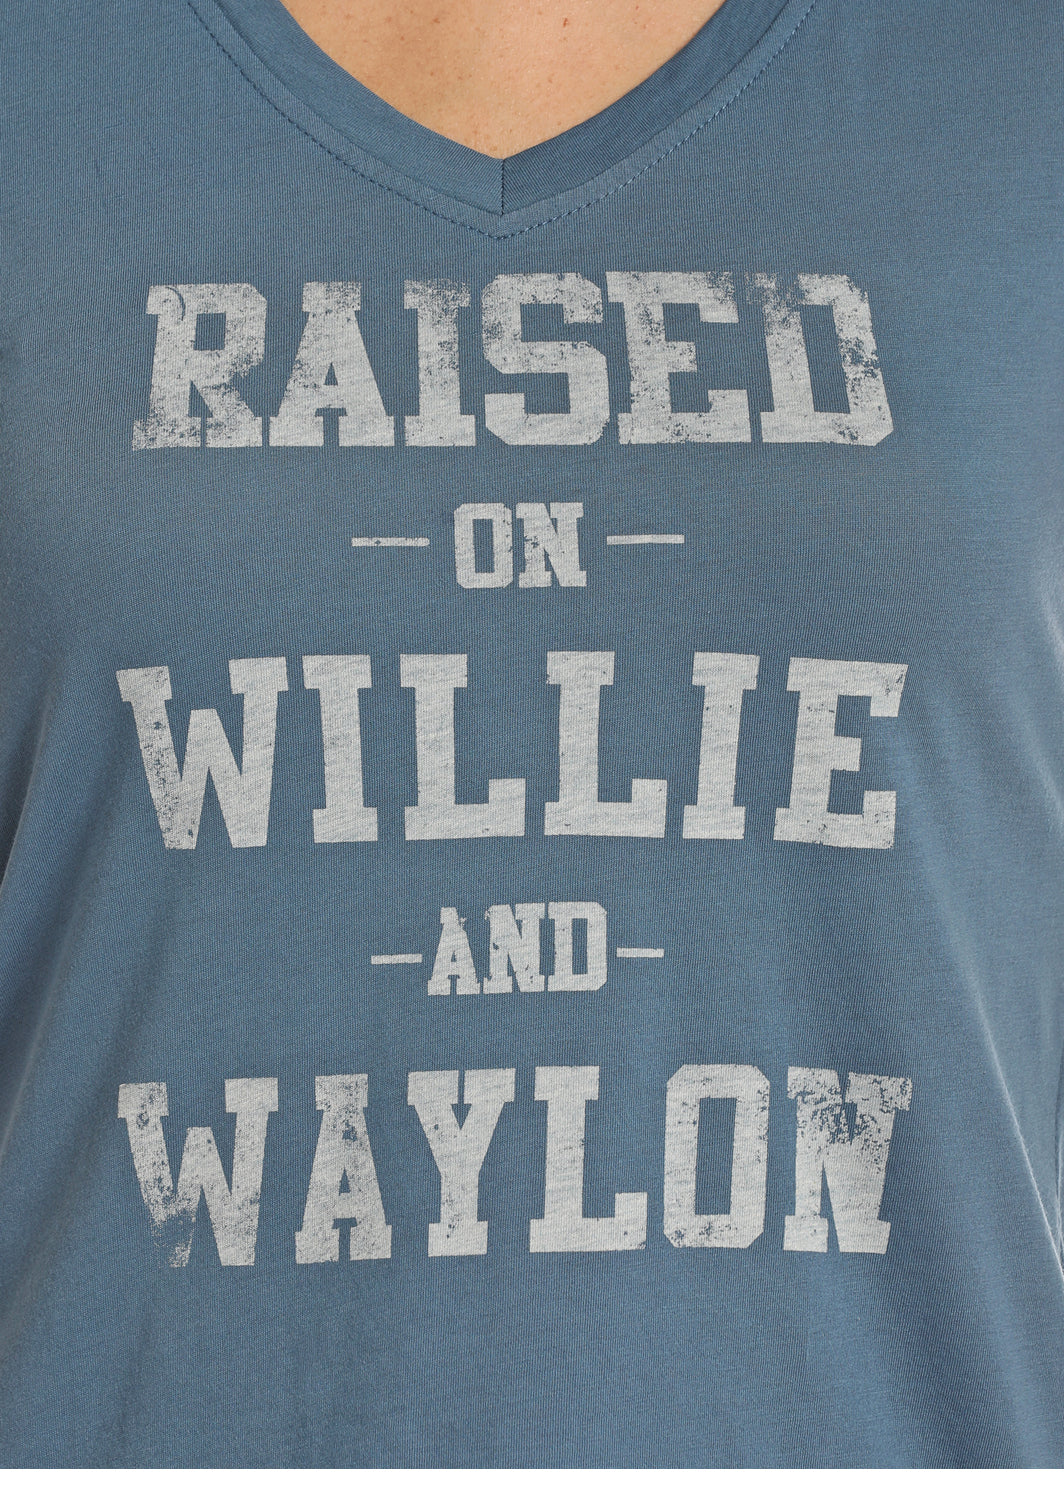 Willie & Waylon Tee